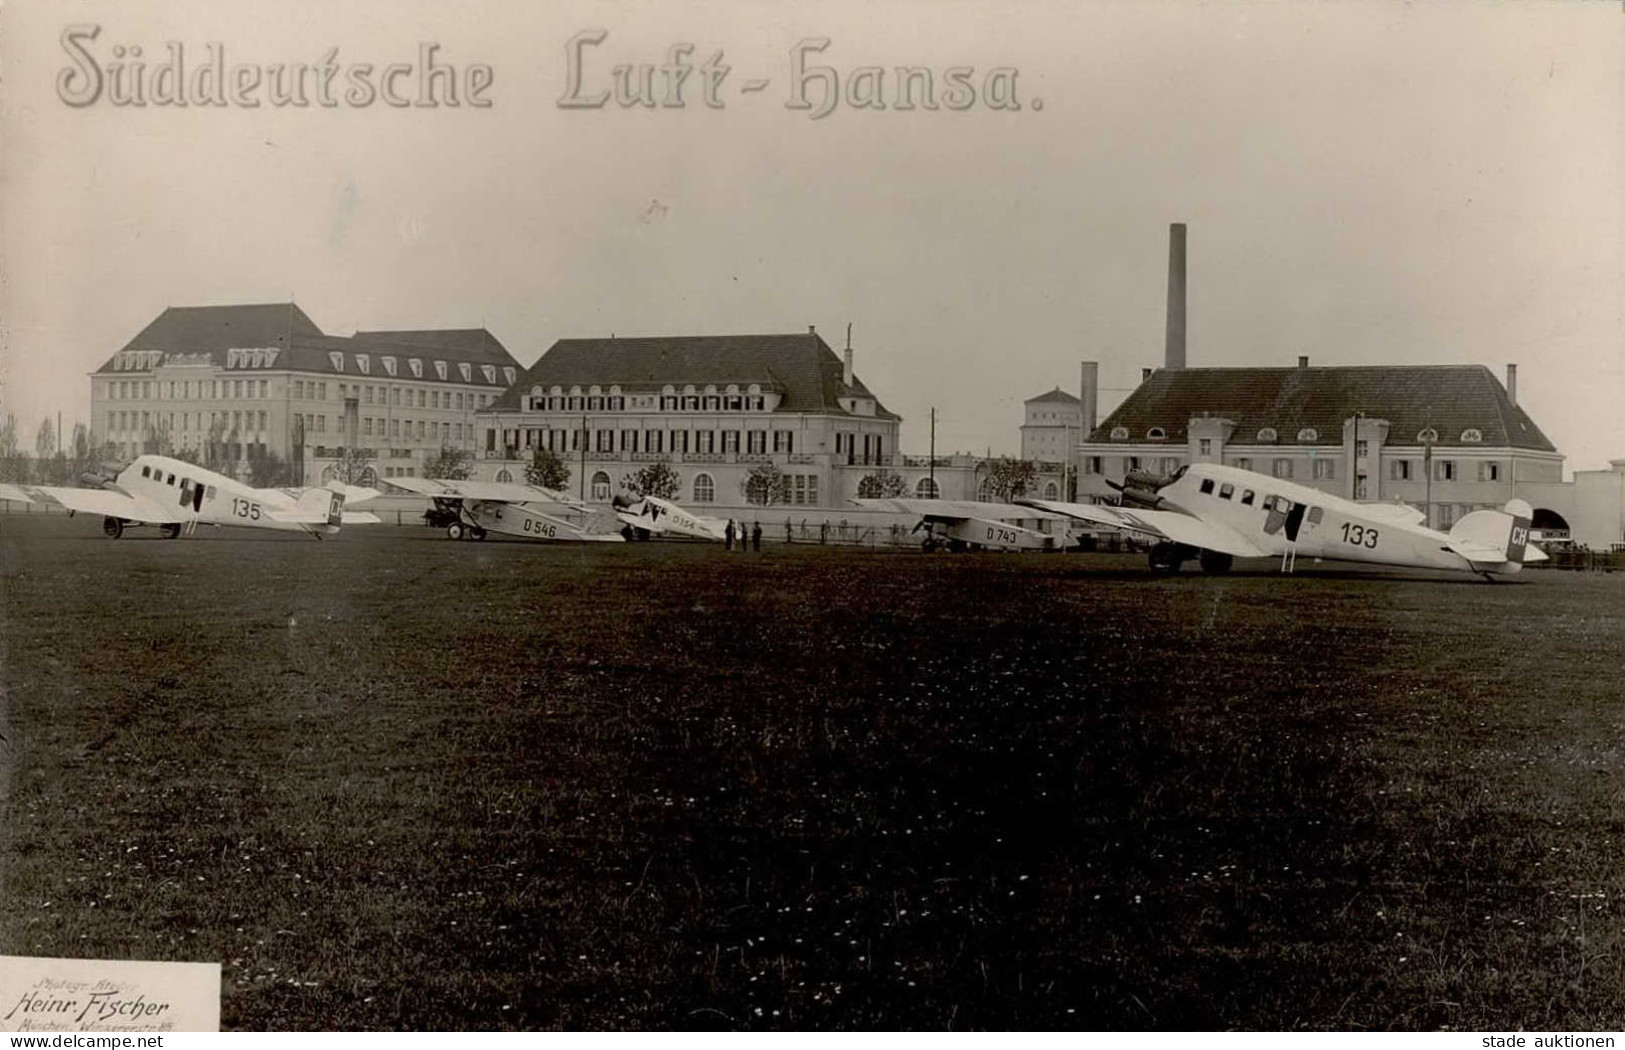 München-Oberwiesenfeld Süddeutsche Luft-Hansa Fotograf Heinrich Fischer I-II - Weltkrieg 1914-18